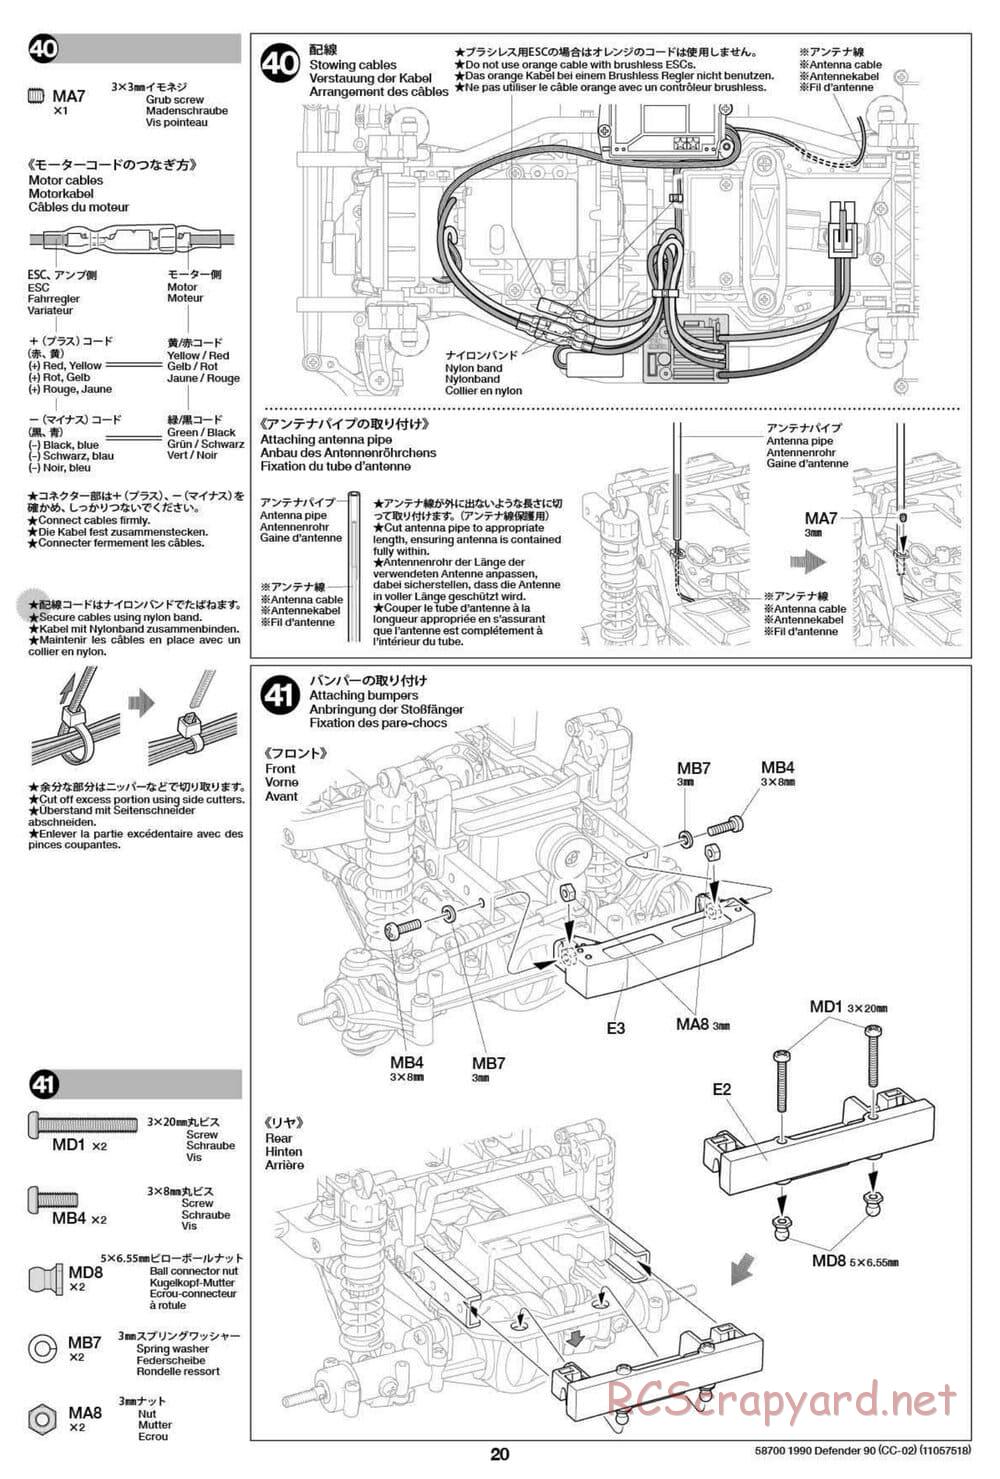 Tamiya - 1990 Land Rover Defender 90 - CC-02 Chassis - Manual - Page 20